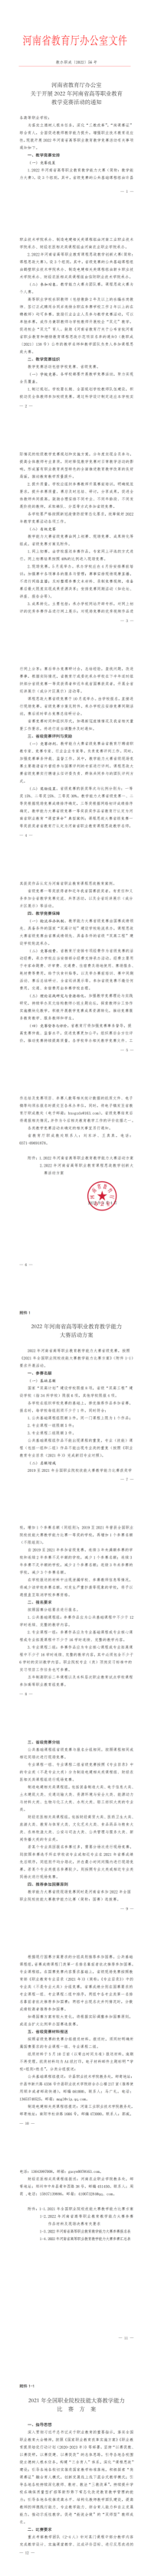 2022年河南省高等职业教育教学竞赛_00.png